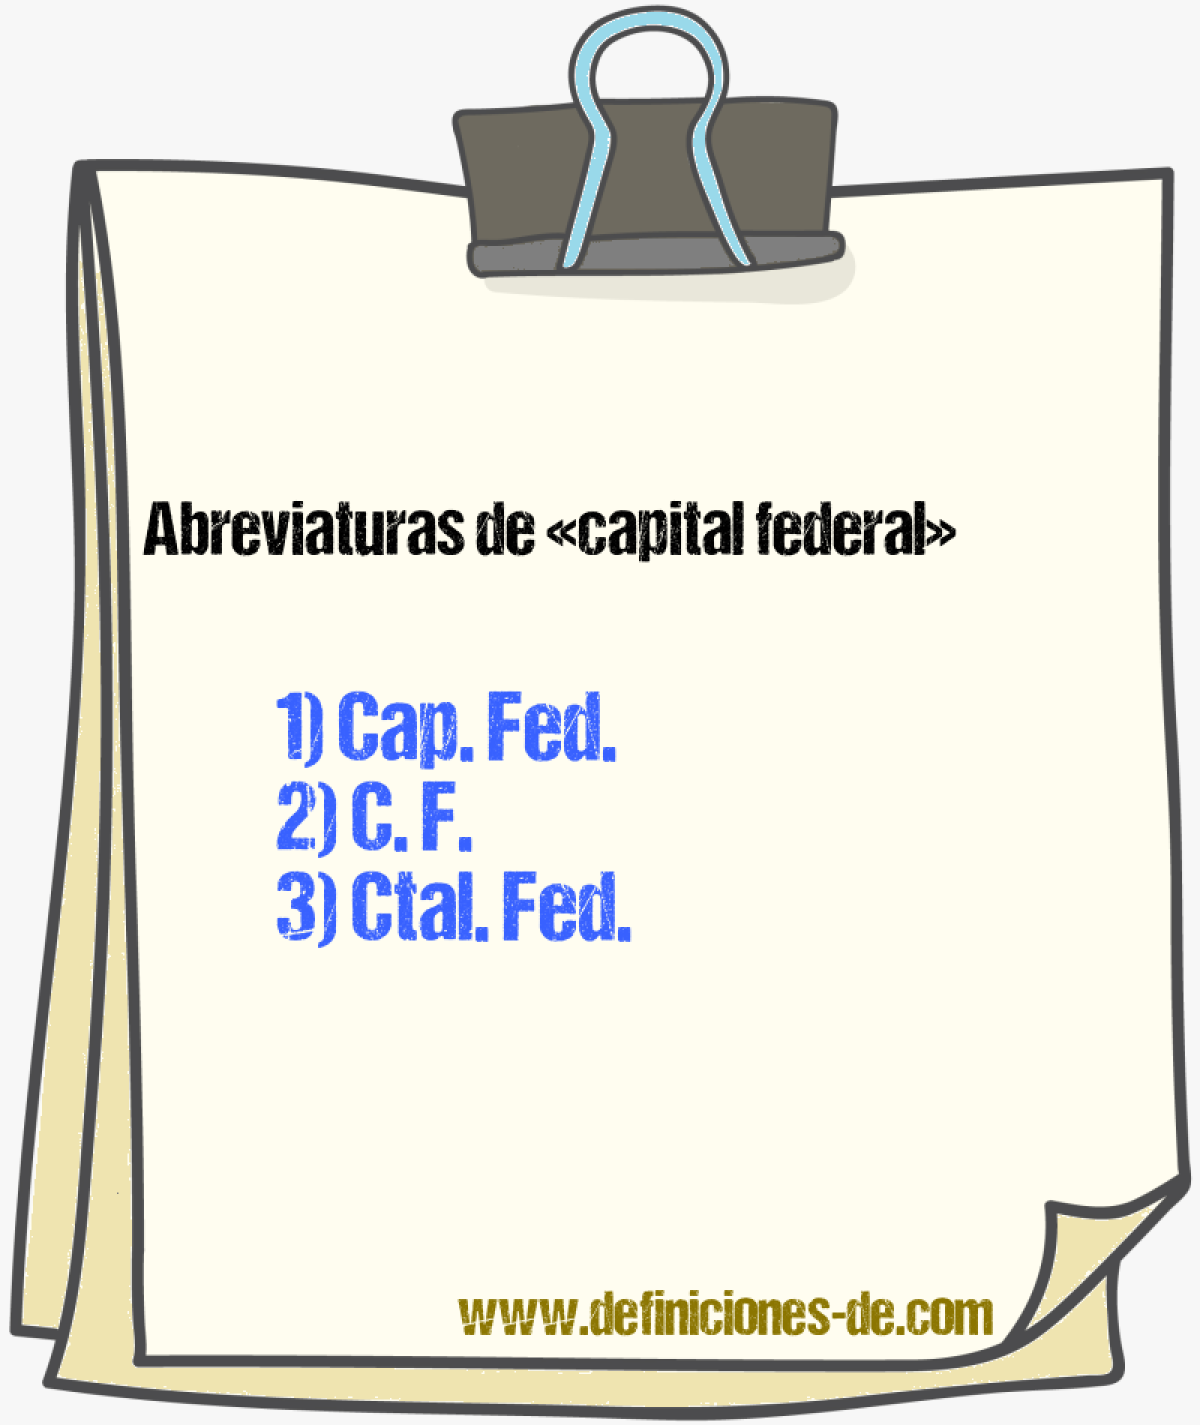 Abreviaturas de capital federal